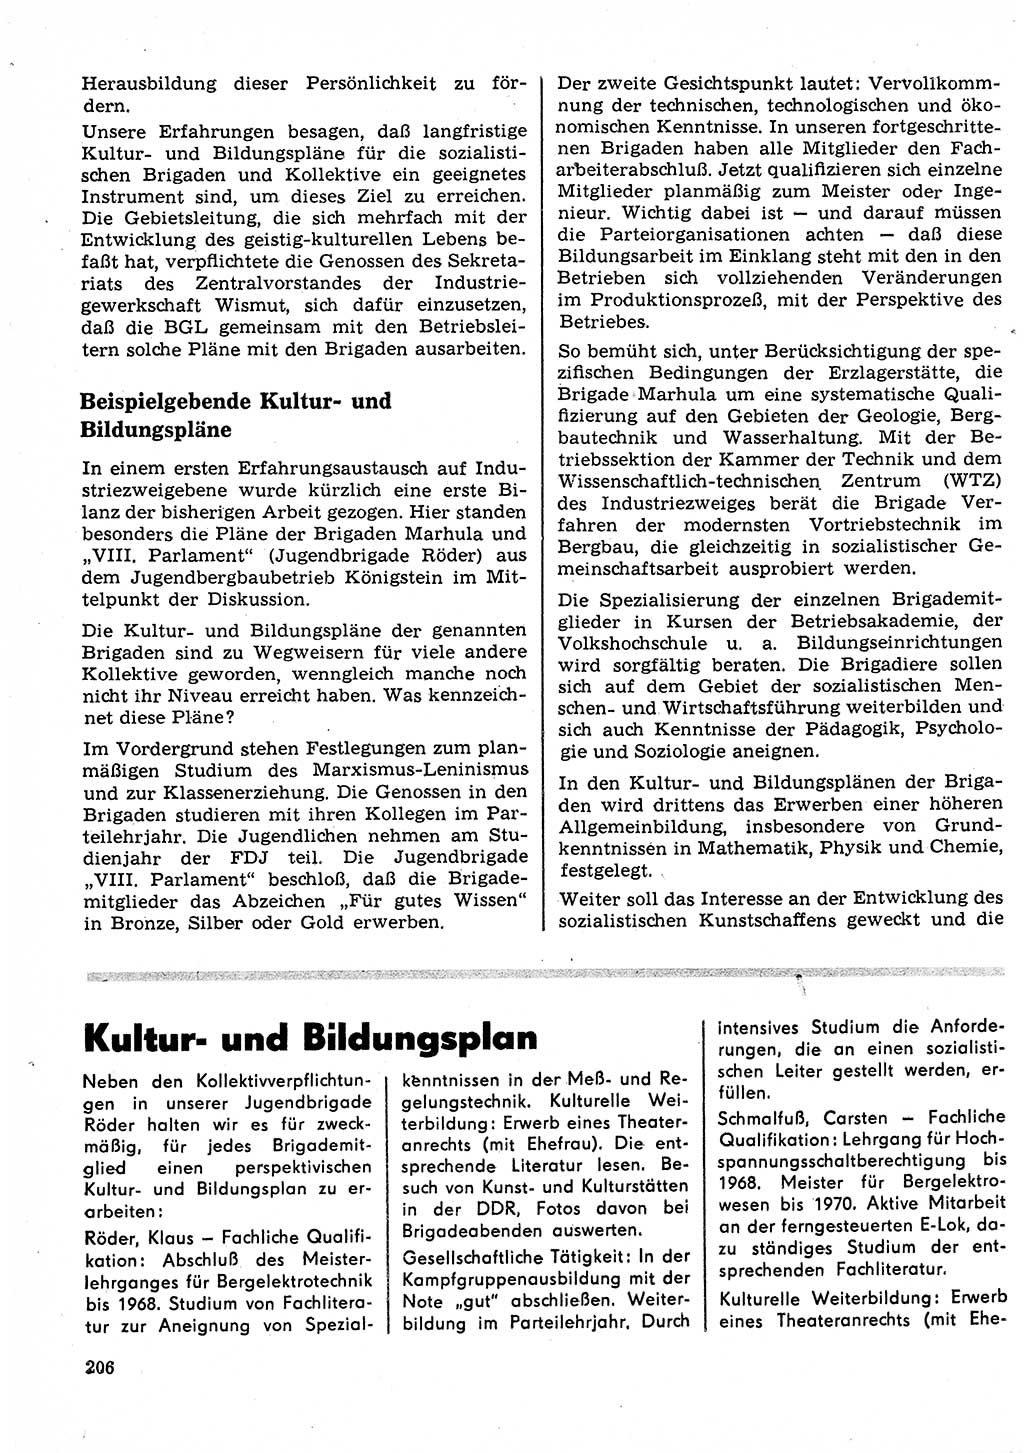 Neuer Weg (NW), Organ des Zentralkomitees (ZK) der SED (Sozialistische Einheitspartei Deutschlands) für Fragen des Parteilebens, 23. Jahrgang [Deutsche Demokratische Republik (DDR)] 1968, Seite 206 (NW ZK SED DDR 1968, S. 206)